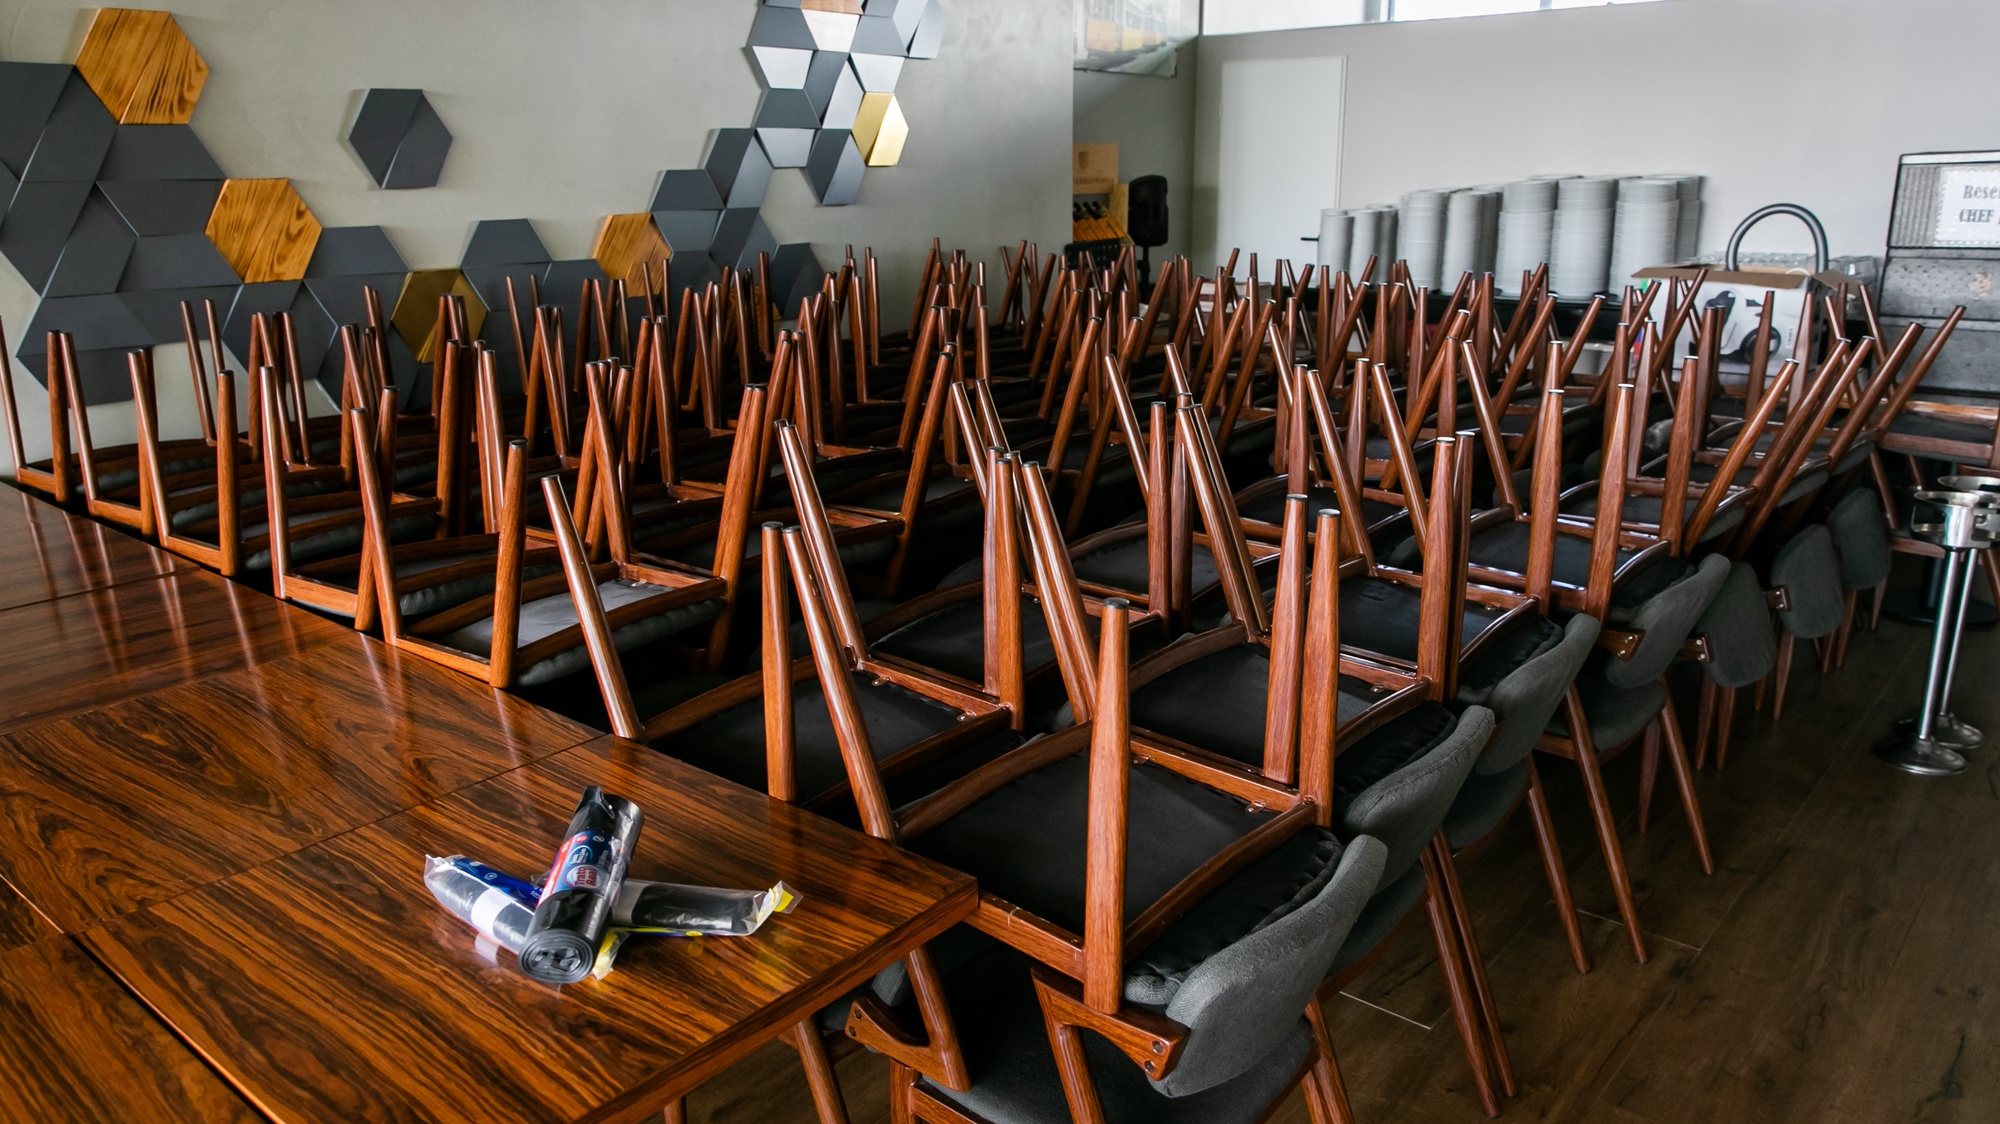 Cadeiras empilhadas no piso superior do restaurante D. Bacalhau, em Lisboa, 15 de maio de 2020. Os restaurantes estão autorizados a reabrir ao público, seguindo regras impostas pela Direção Geral de Saúde, a 18 de maio. (ACOMPANHA TEXTO DE 16 DE MAIO DE 2020). JOSÉ SENA GOULÃO/LUSA